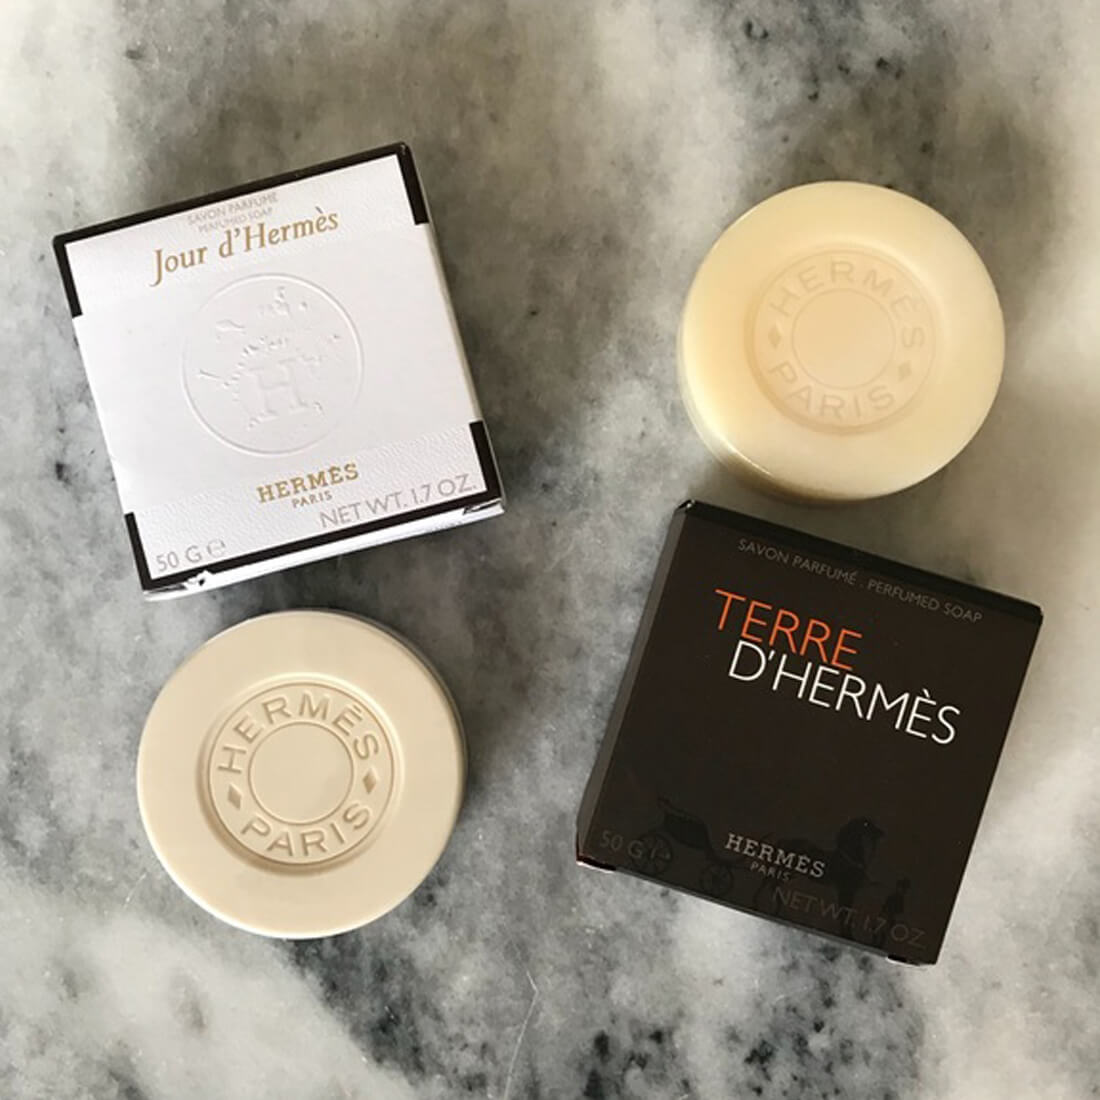 Hermes Jour D’Hermes & Terre D’Hermes Perfumed Body Bath Soap Combo For Women & Men 50g Each